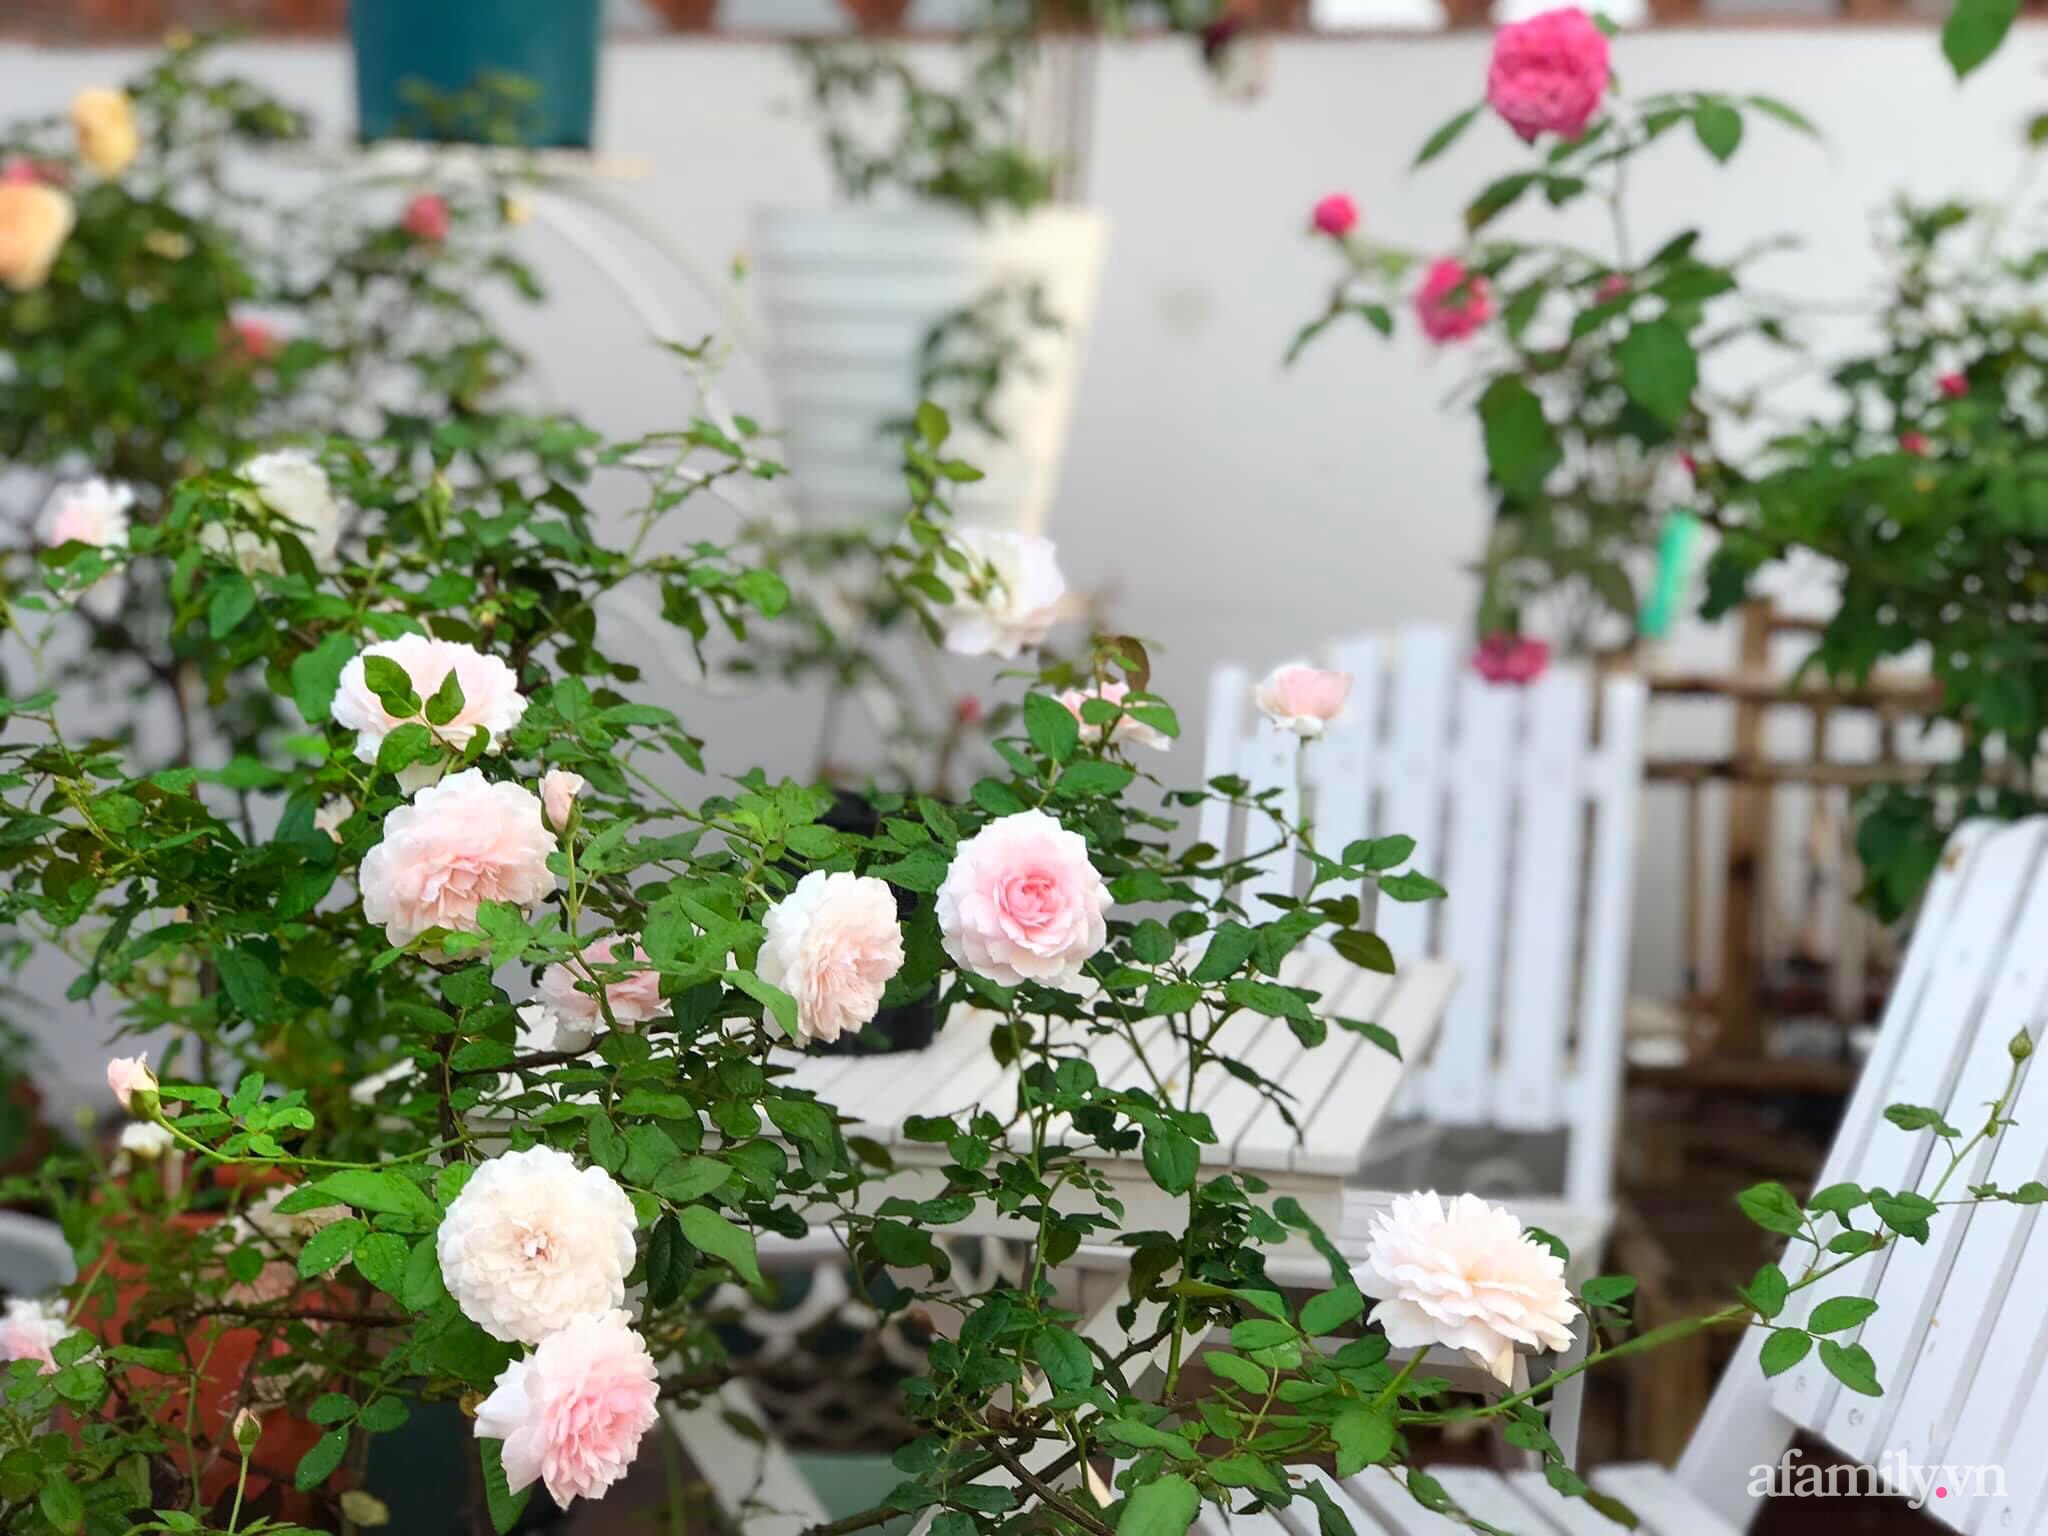 Ngày 20/11 ghé thăm vườn hồng ngát hương dịu dàng khoe sắc trên sân thượng của cô giáo dạy Văn ở Nha Trang - Ảnh 17.